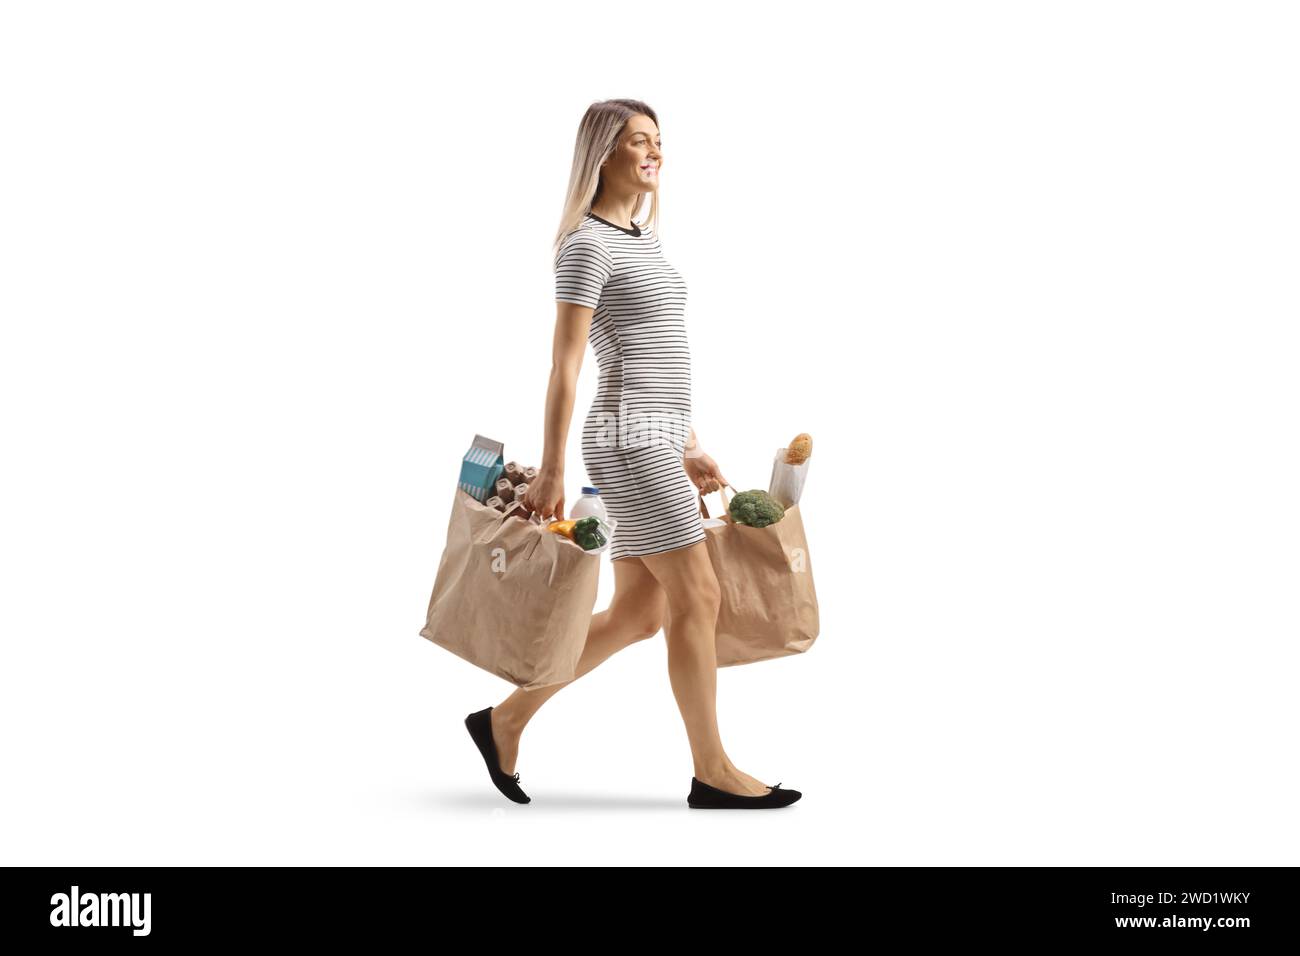 Plan complet d'une jeune femme marchant avec des sacs d'épicerie isolés sur fond blanc Banque D'Images